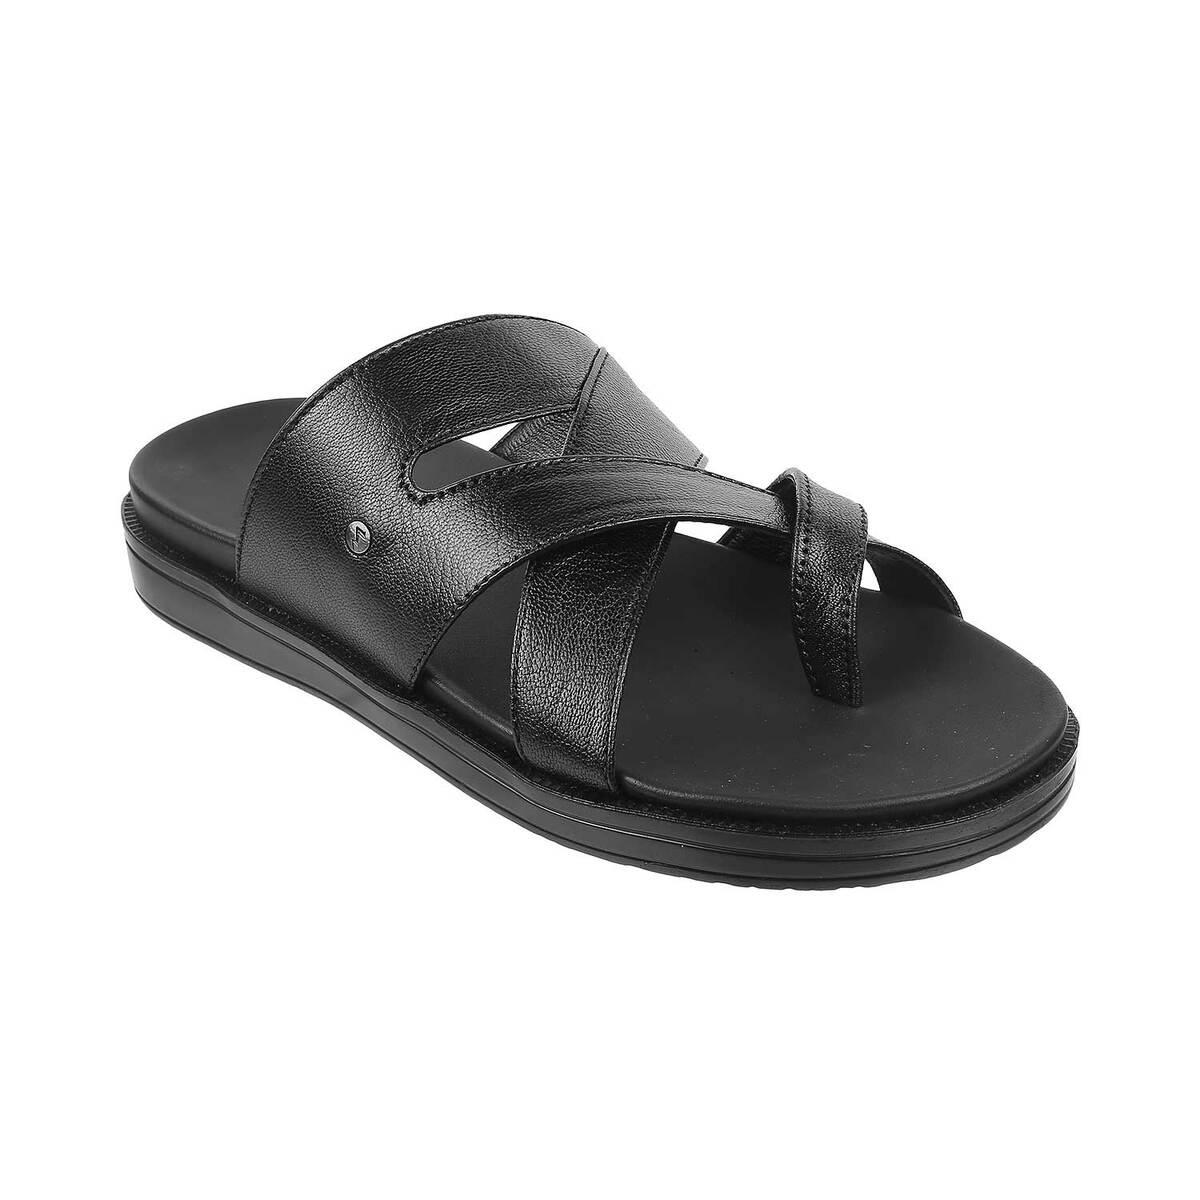 Buy Men Black Casual Slippers Online | SKU: 16-724-11-40-Metro Shoes